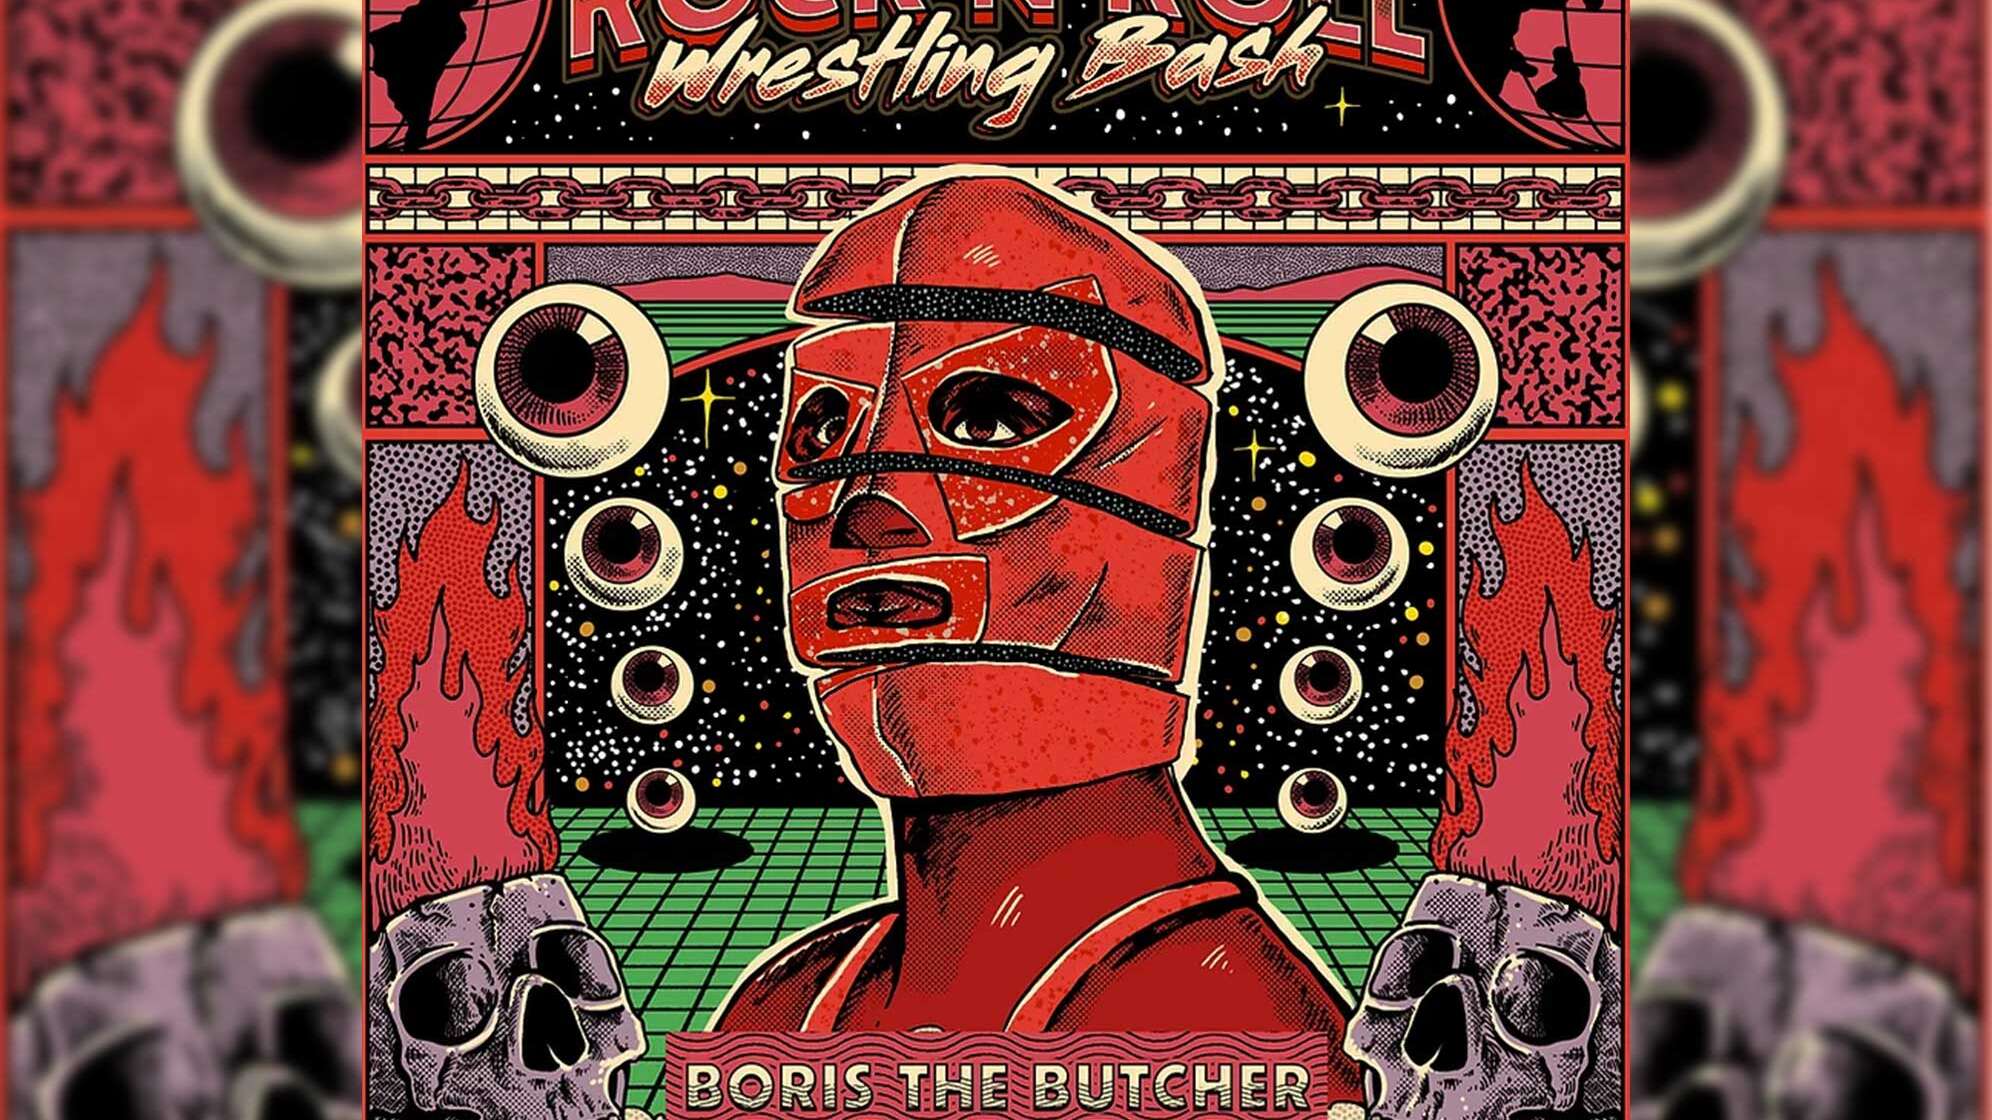 Das Plakat vom Rock'n'Roll Wrestling Bash auf Deutschlandtour